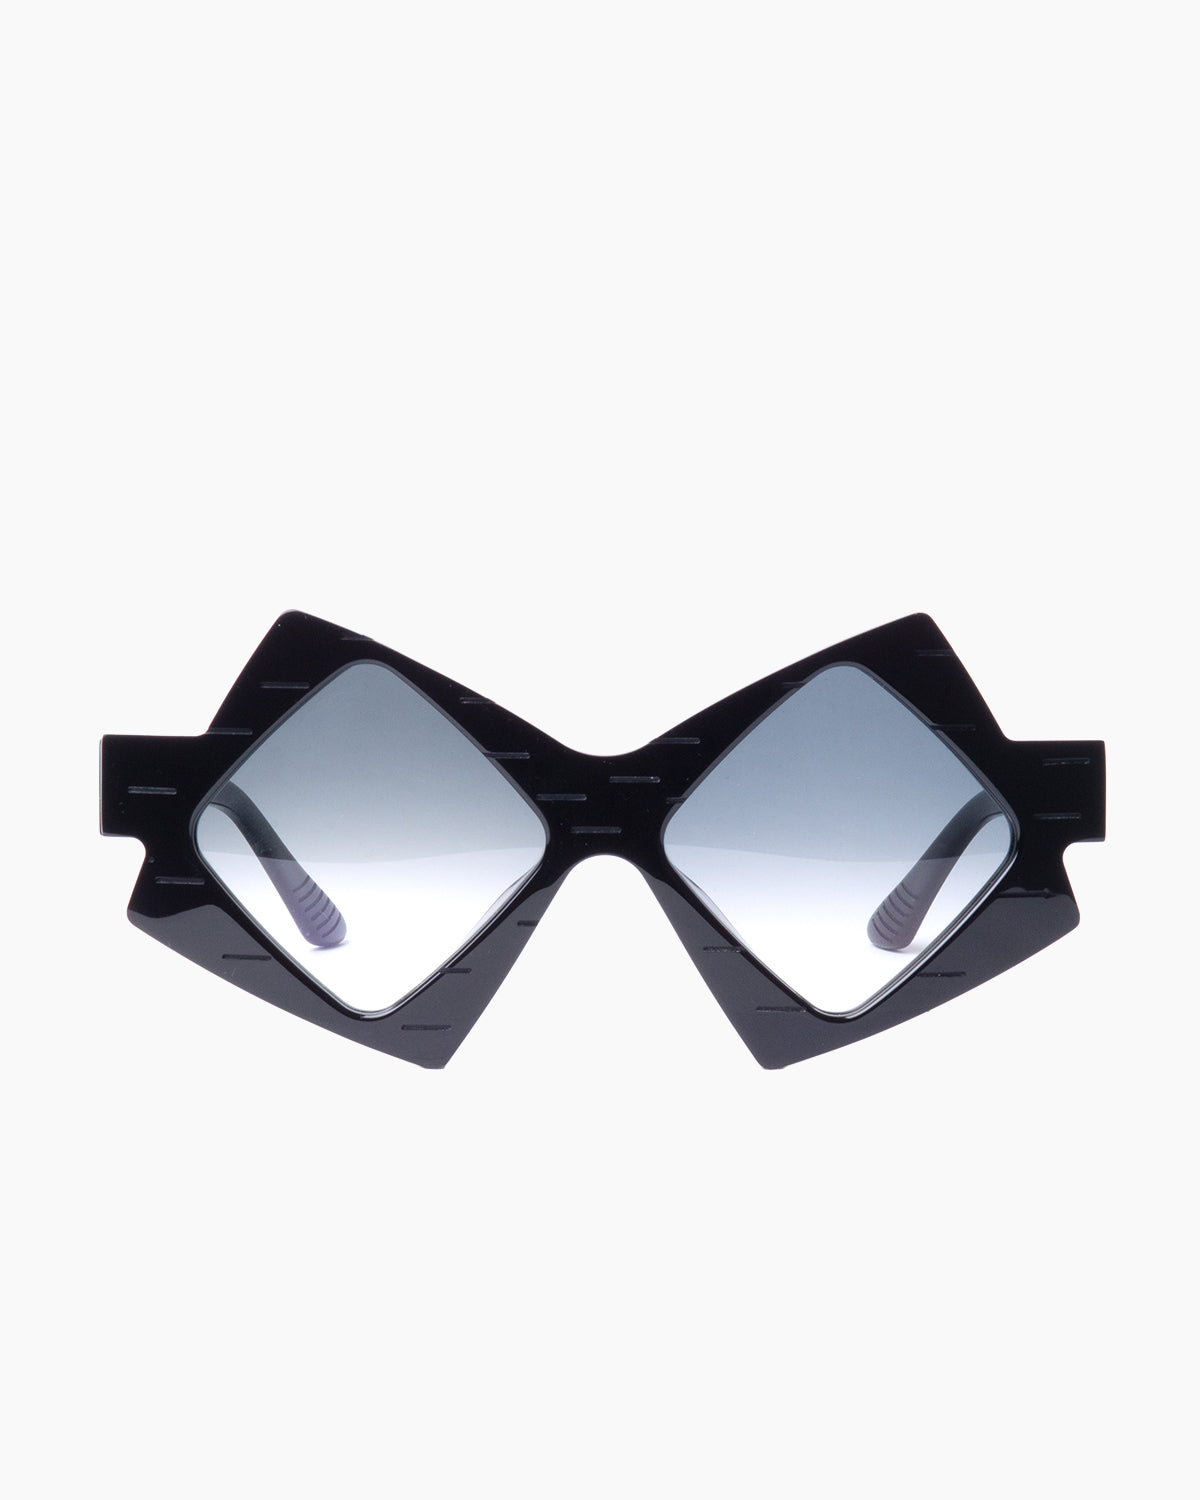 Yohji Yamamoto - SLOOK 004 - A001 | glasses bar